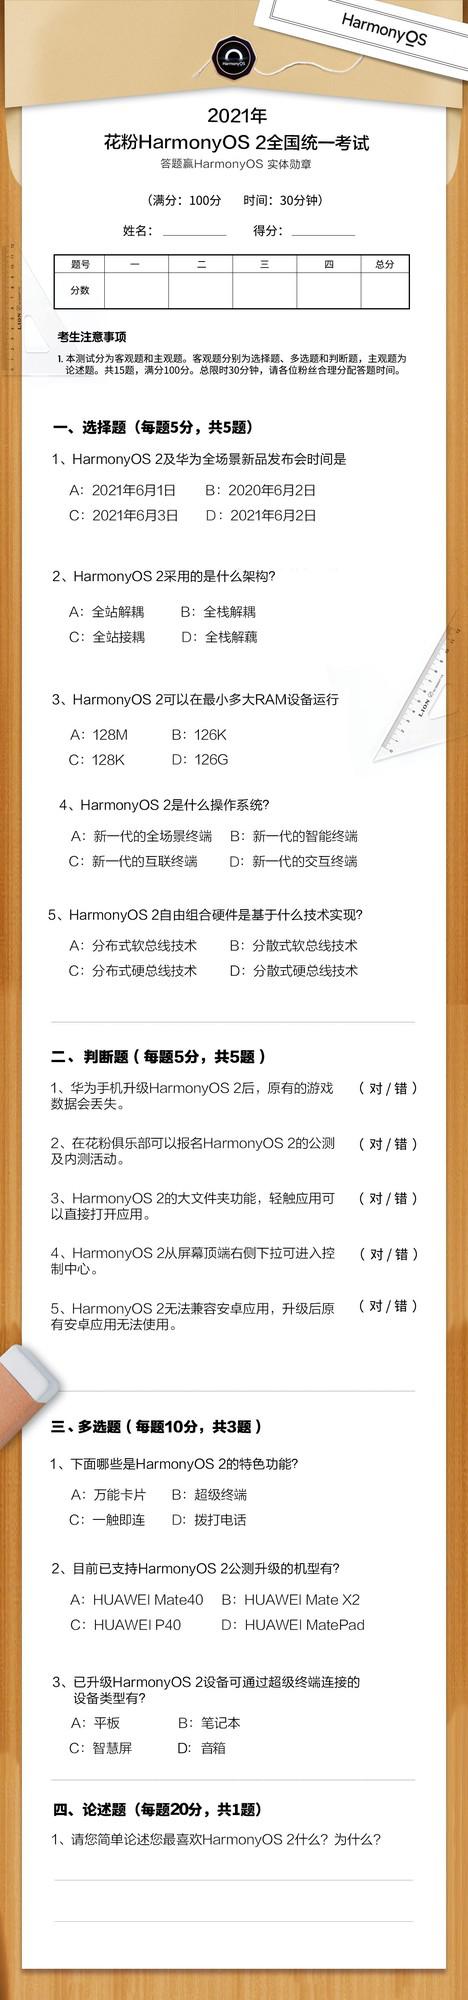 华为推出鸿蒙 HarmonyOS 2 知识考试